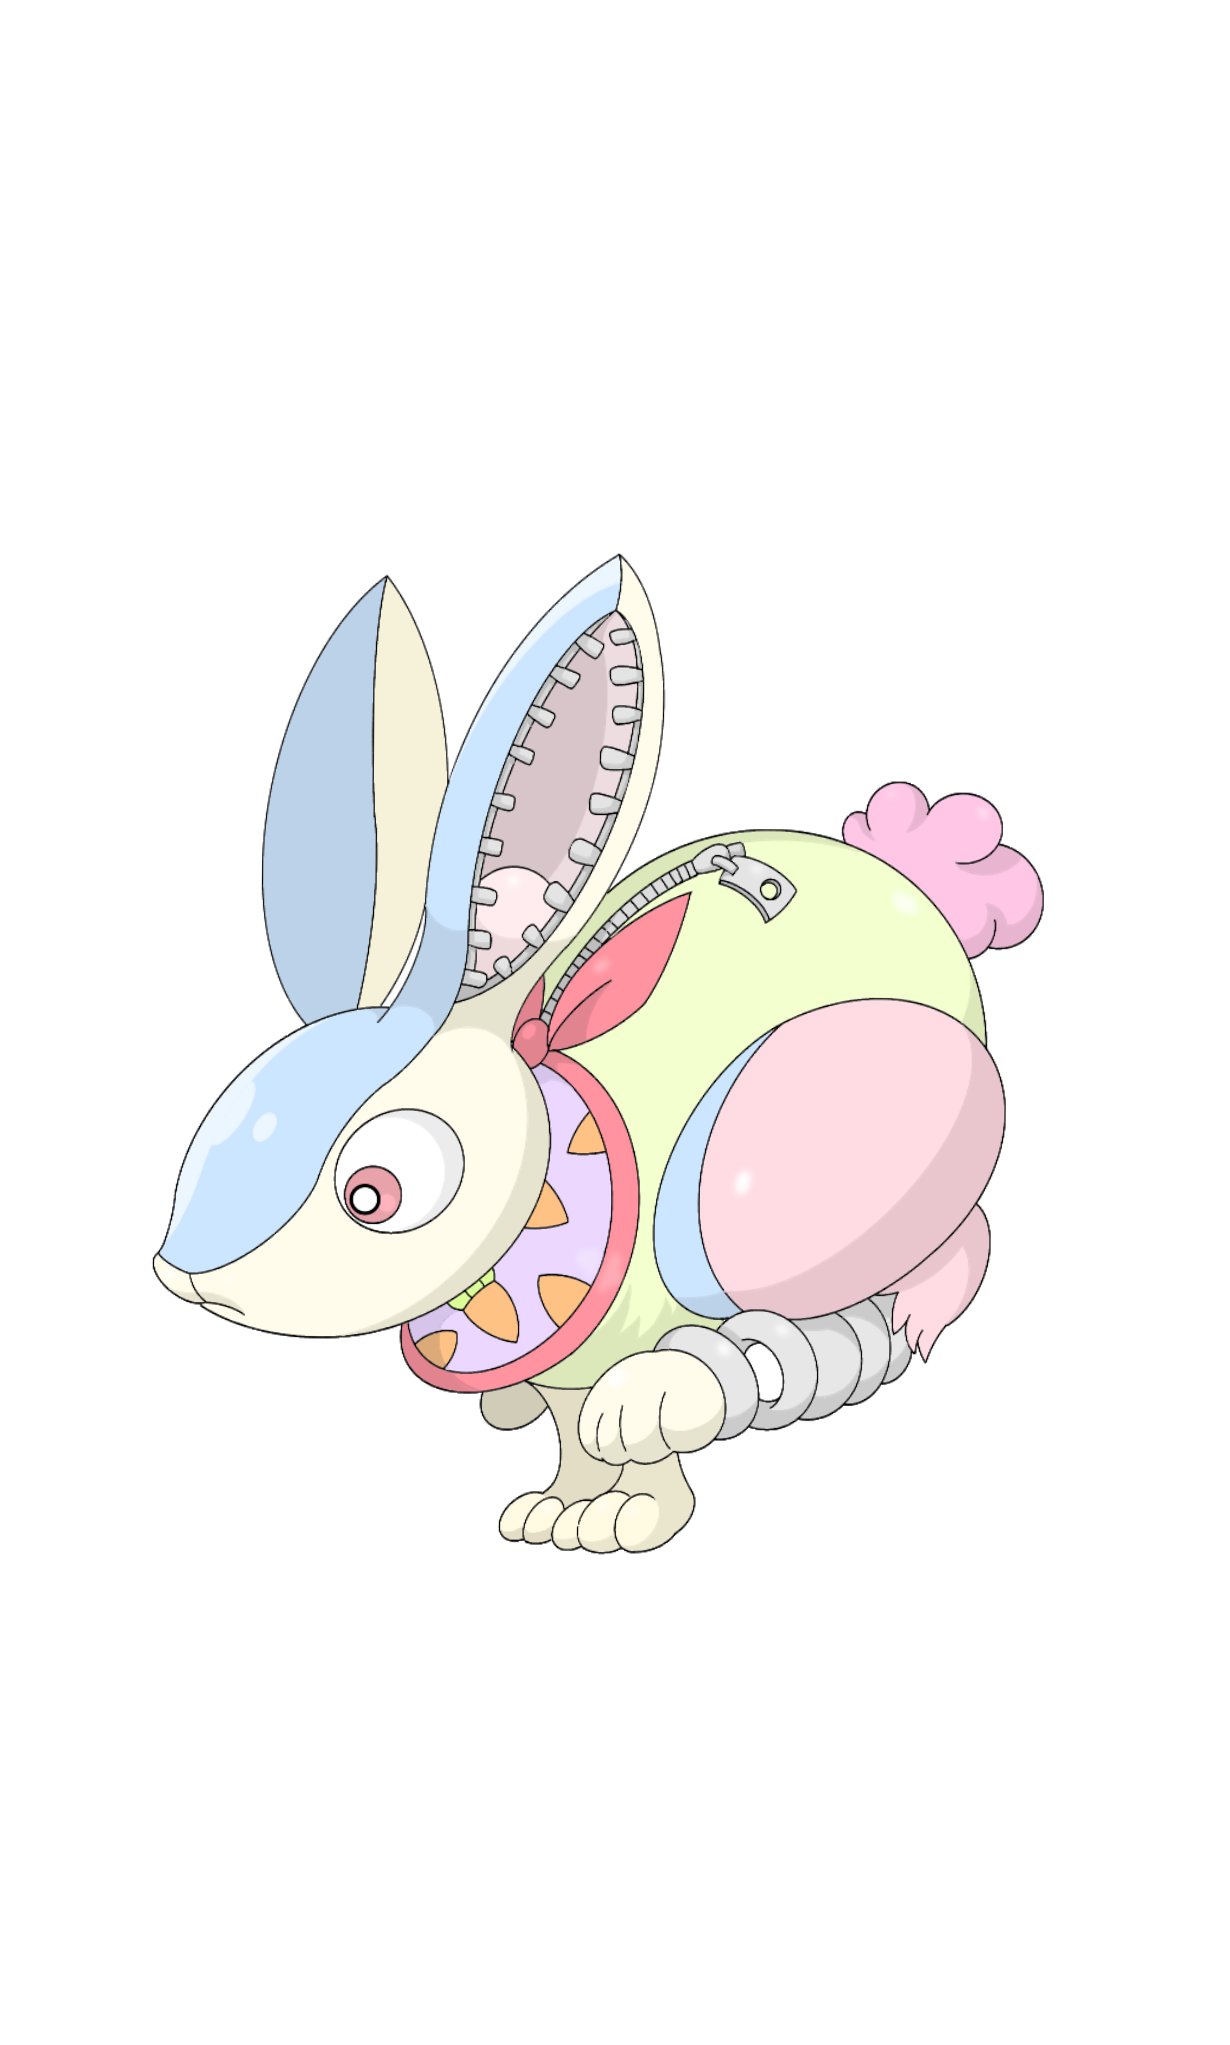 Danieru オリジナルモンスター No 129 ジャンキック ウサギ型のぬいぐるみ魔物 絵描きさんと繋がりたい 創作クラスタさんと繋がりたい T Co Jzumz62yjo Twitter